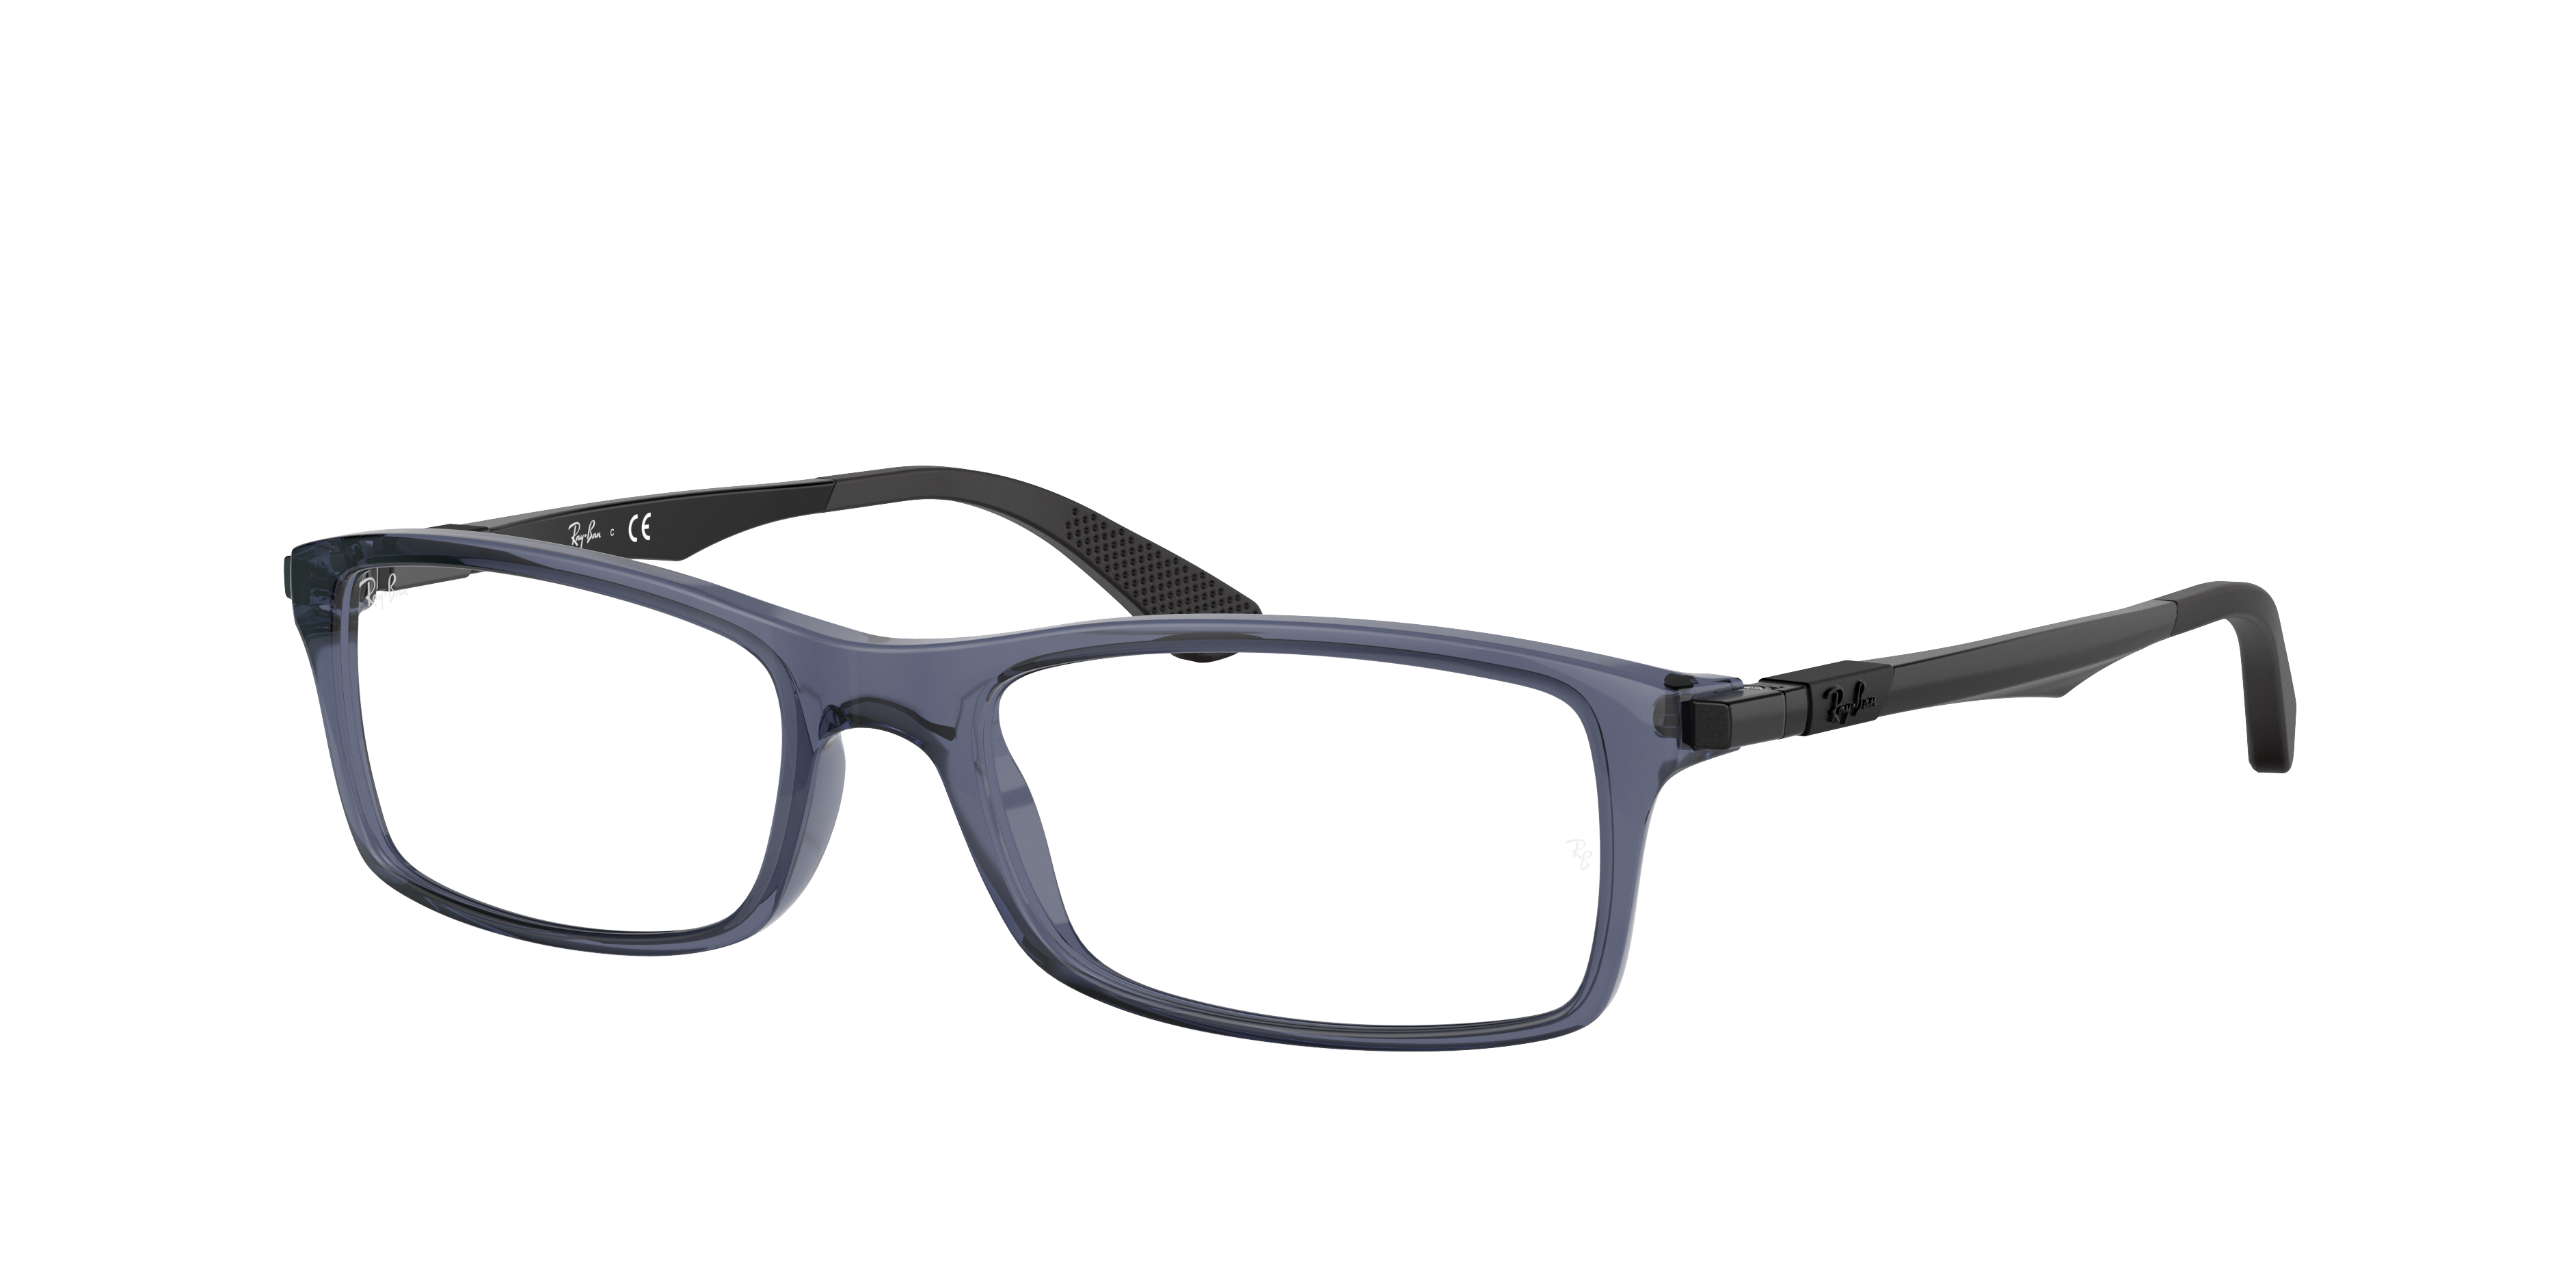 Ray Ban Rb7017 Eyeglasses Black Frame Clear Lenses Polarized 54-17